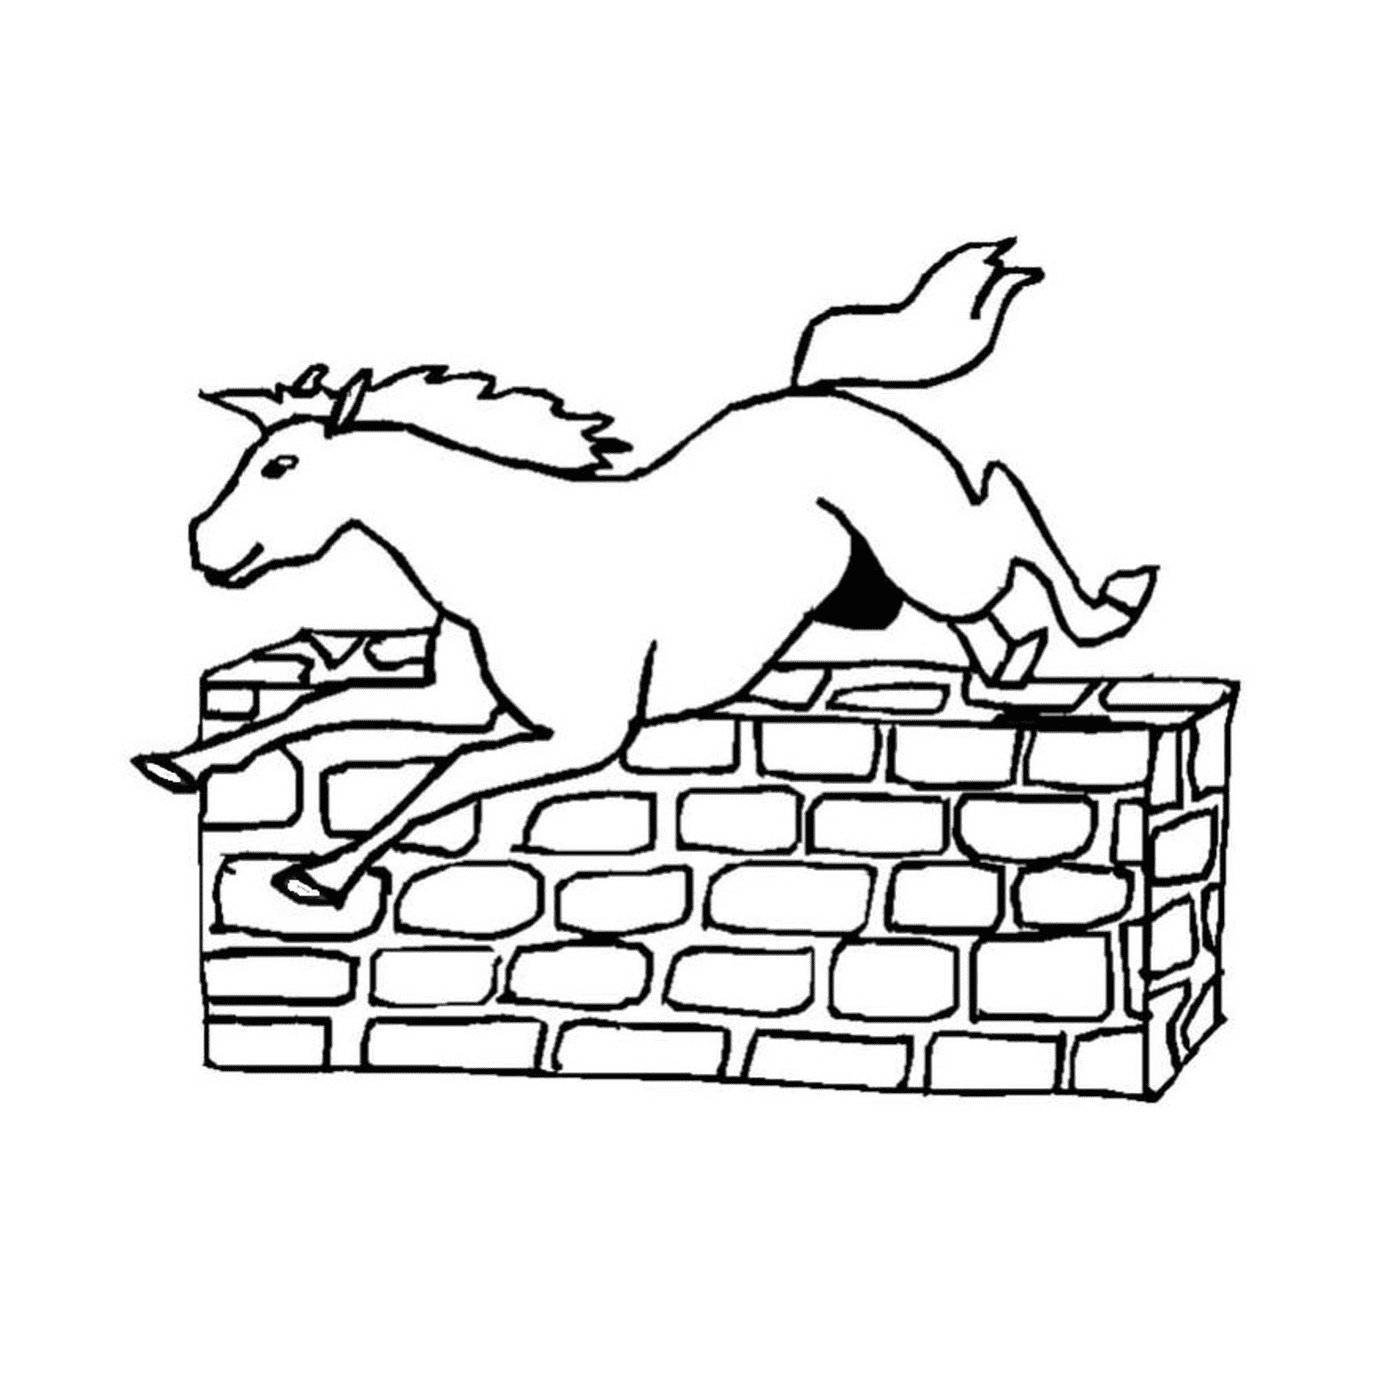  Bold pulando cavalo sobre uma parede 